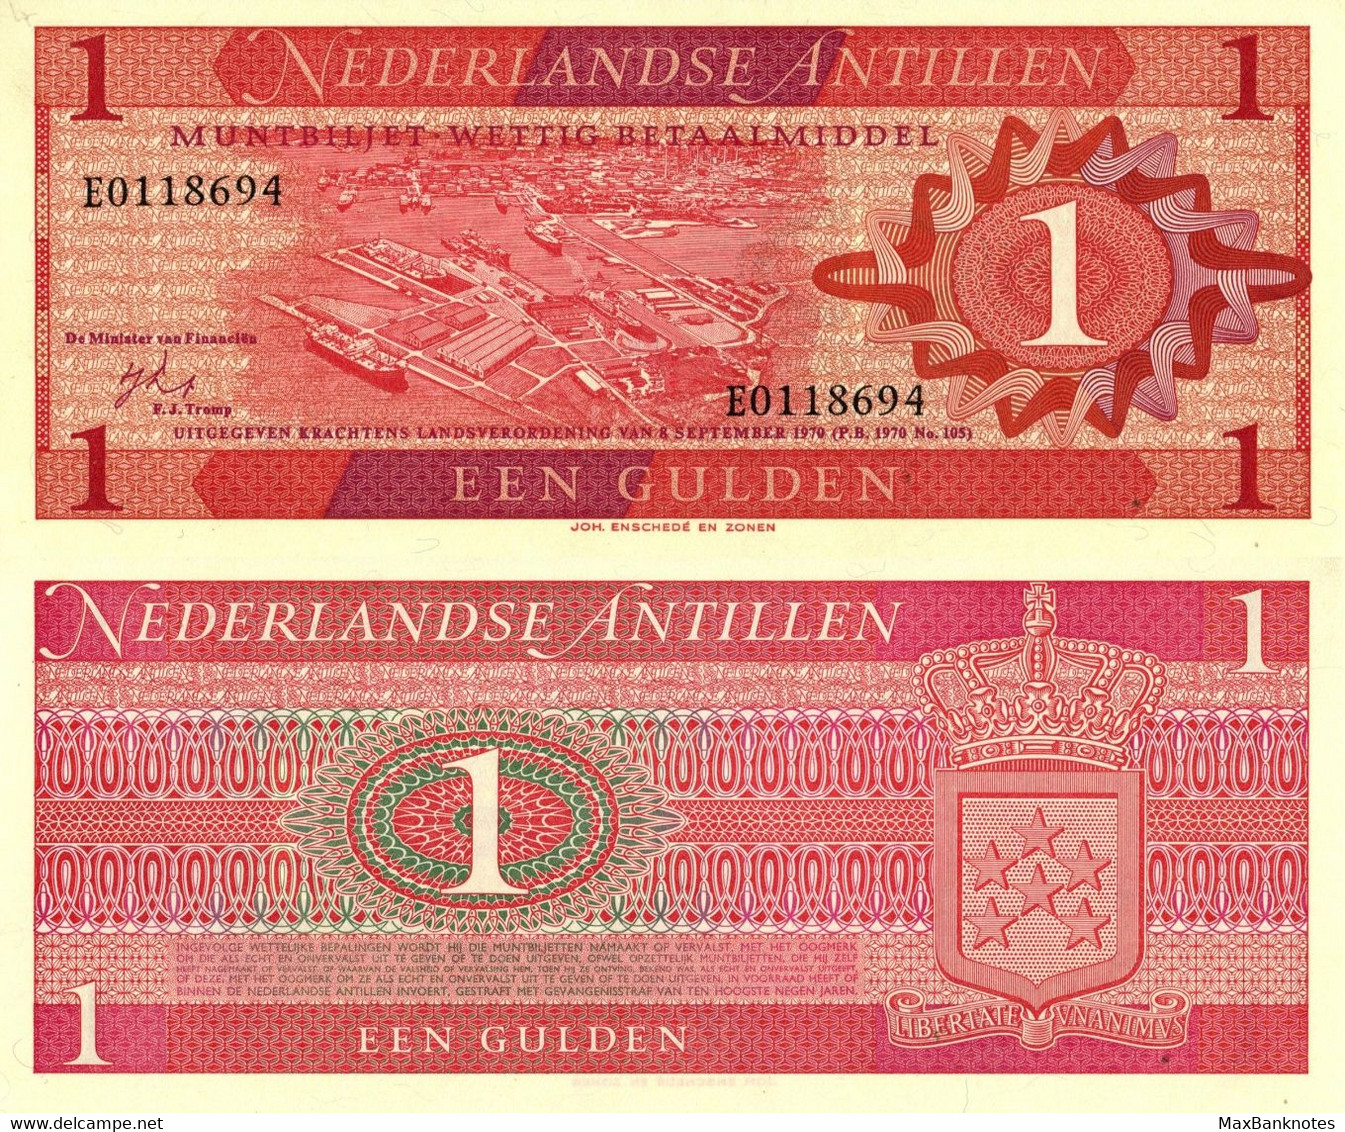 Netherlands Antilles / 1 Gulden / 1970 / P-20(a) / UNC - Caraïbes Orientales